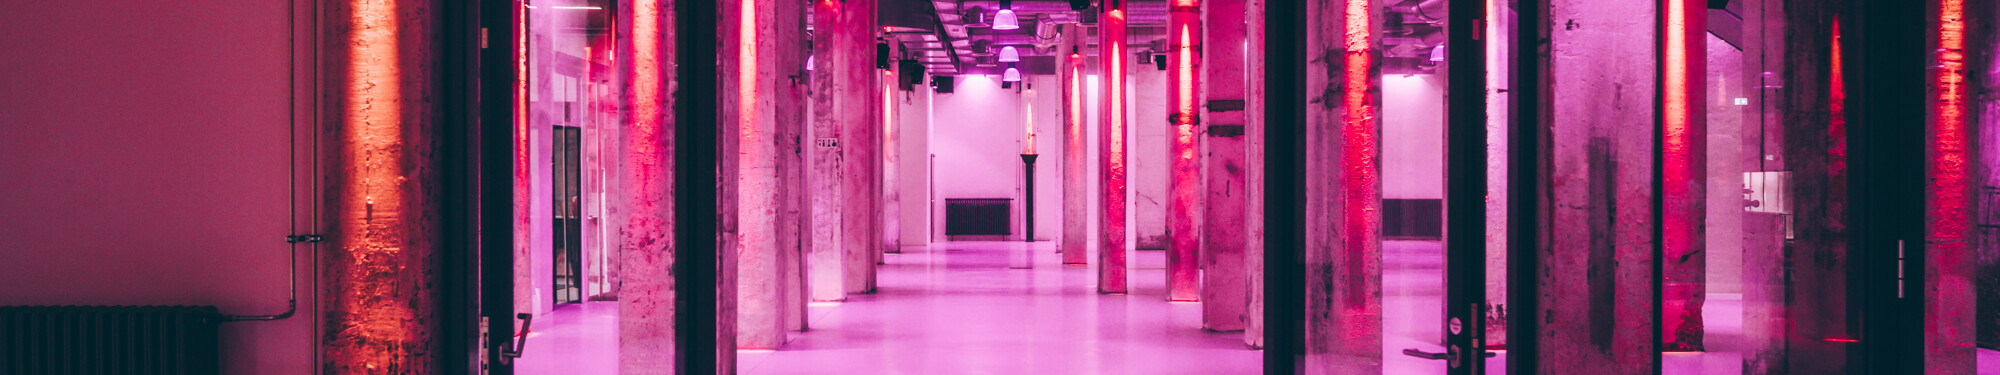 Die Stützpfeiler im Foyer der Grand Hall Zollverein in Essen sind mit rotem und violettem Neonlicht beleuchtet.  